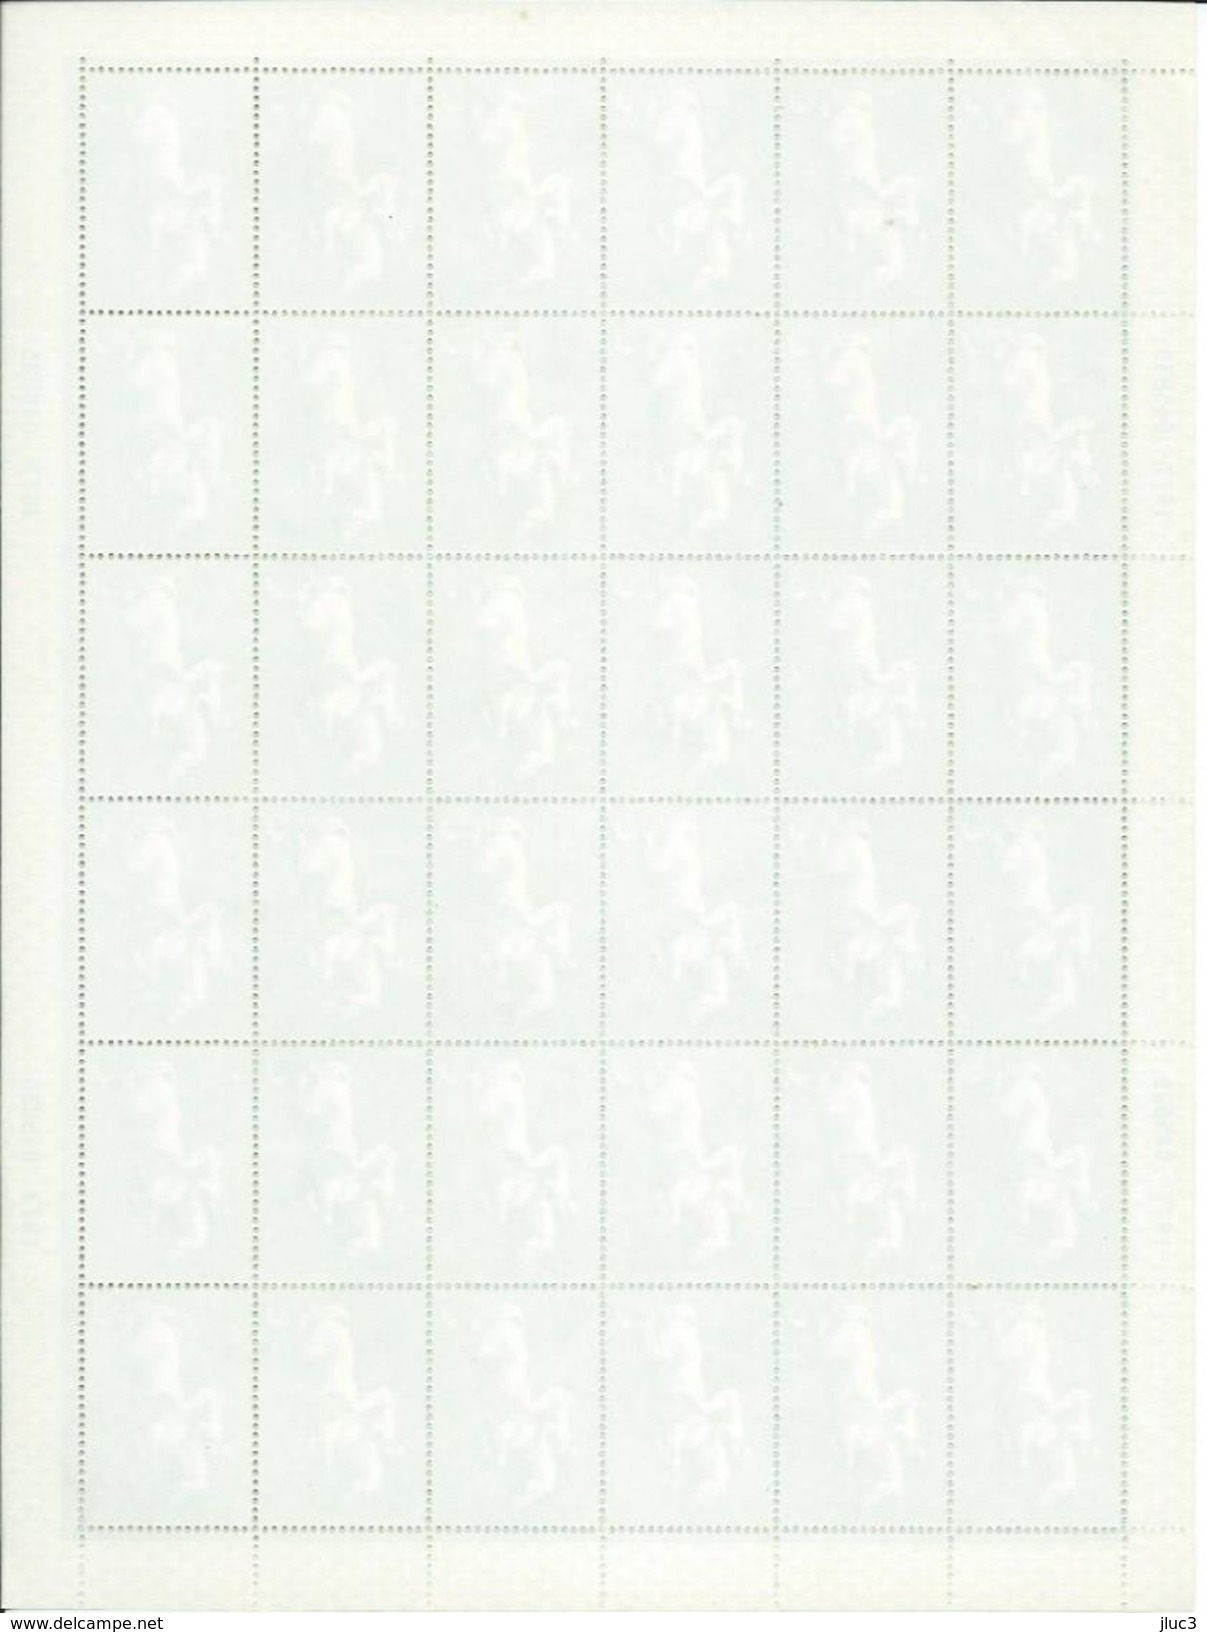 FC4398 - RARE - URSS 1977 - La  Belle  FEUILLE  Entière  Neuve**  De  36  TIMBRES  N° 4398 (YT) -- SPORT JO 80 : Jumping - Full Sheets